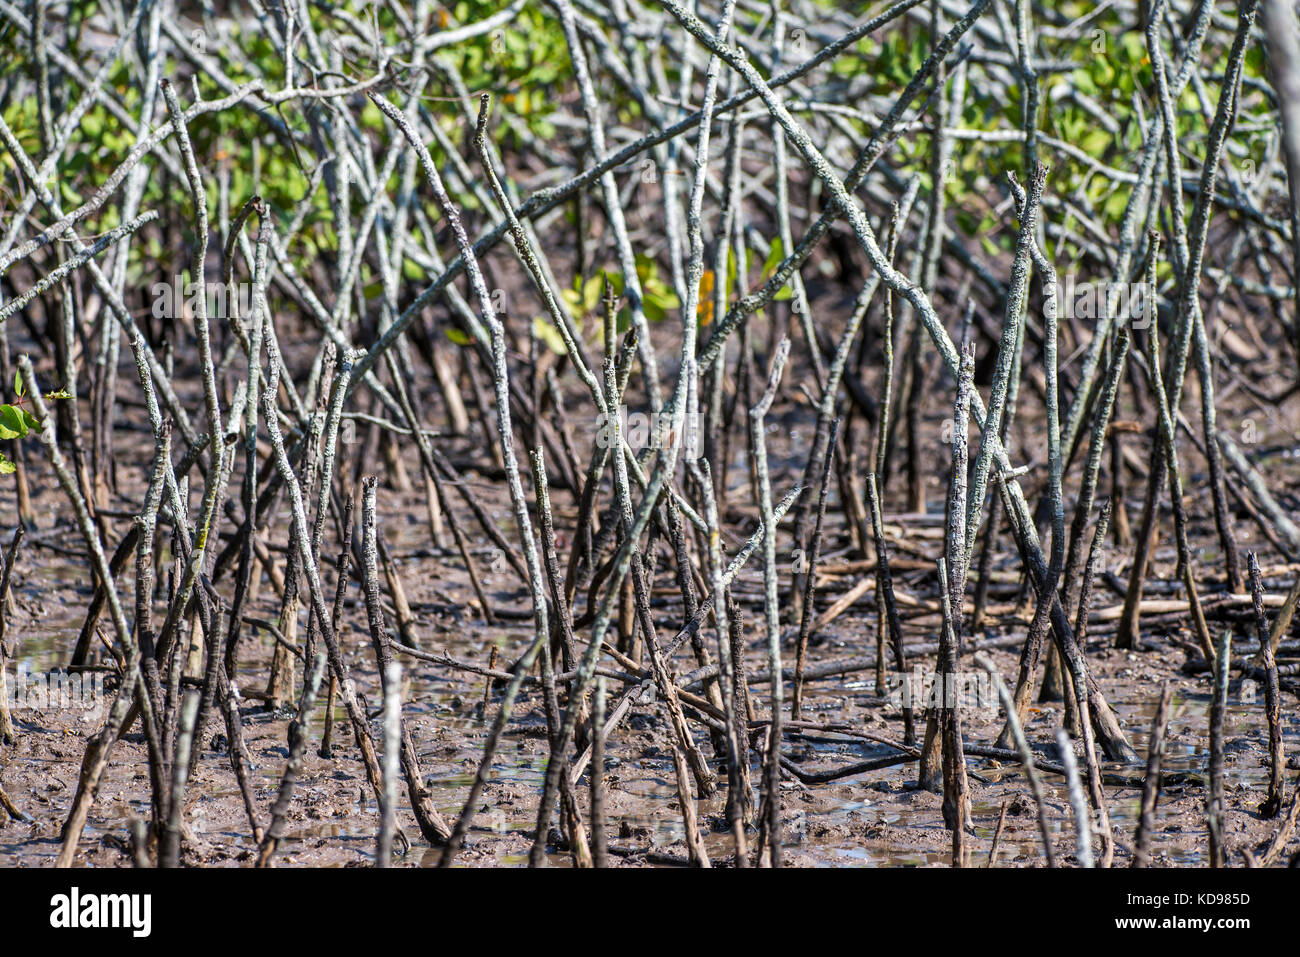 'Mangue (Ecossistema) fotografado em Vitória, Espírito Santo -  Sudeste do Brasil. Bioma Mata Atlântica. Registro feito em 2013.      ENGLISH: Mangrov Stock Photo